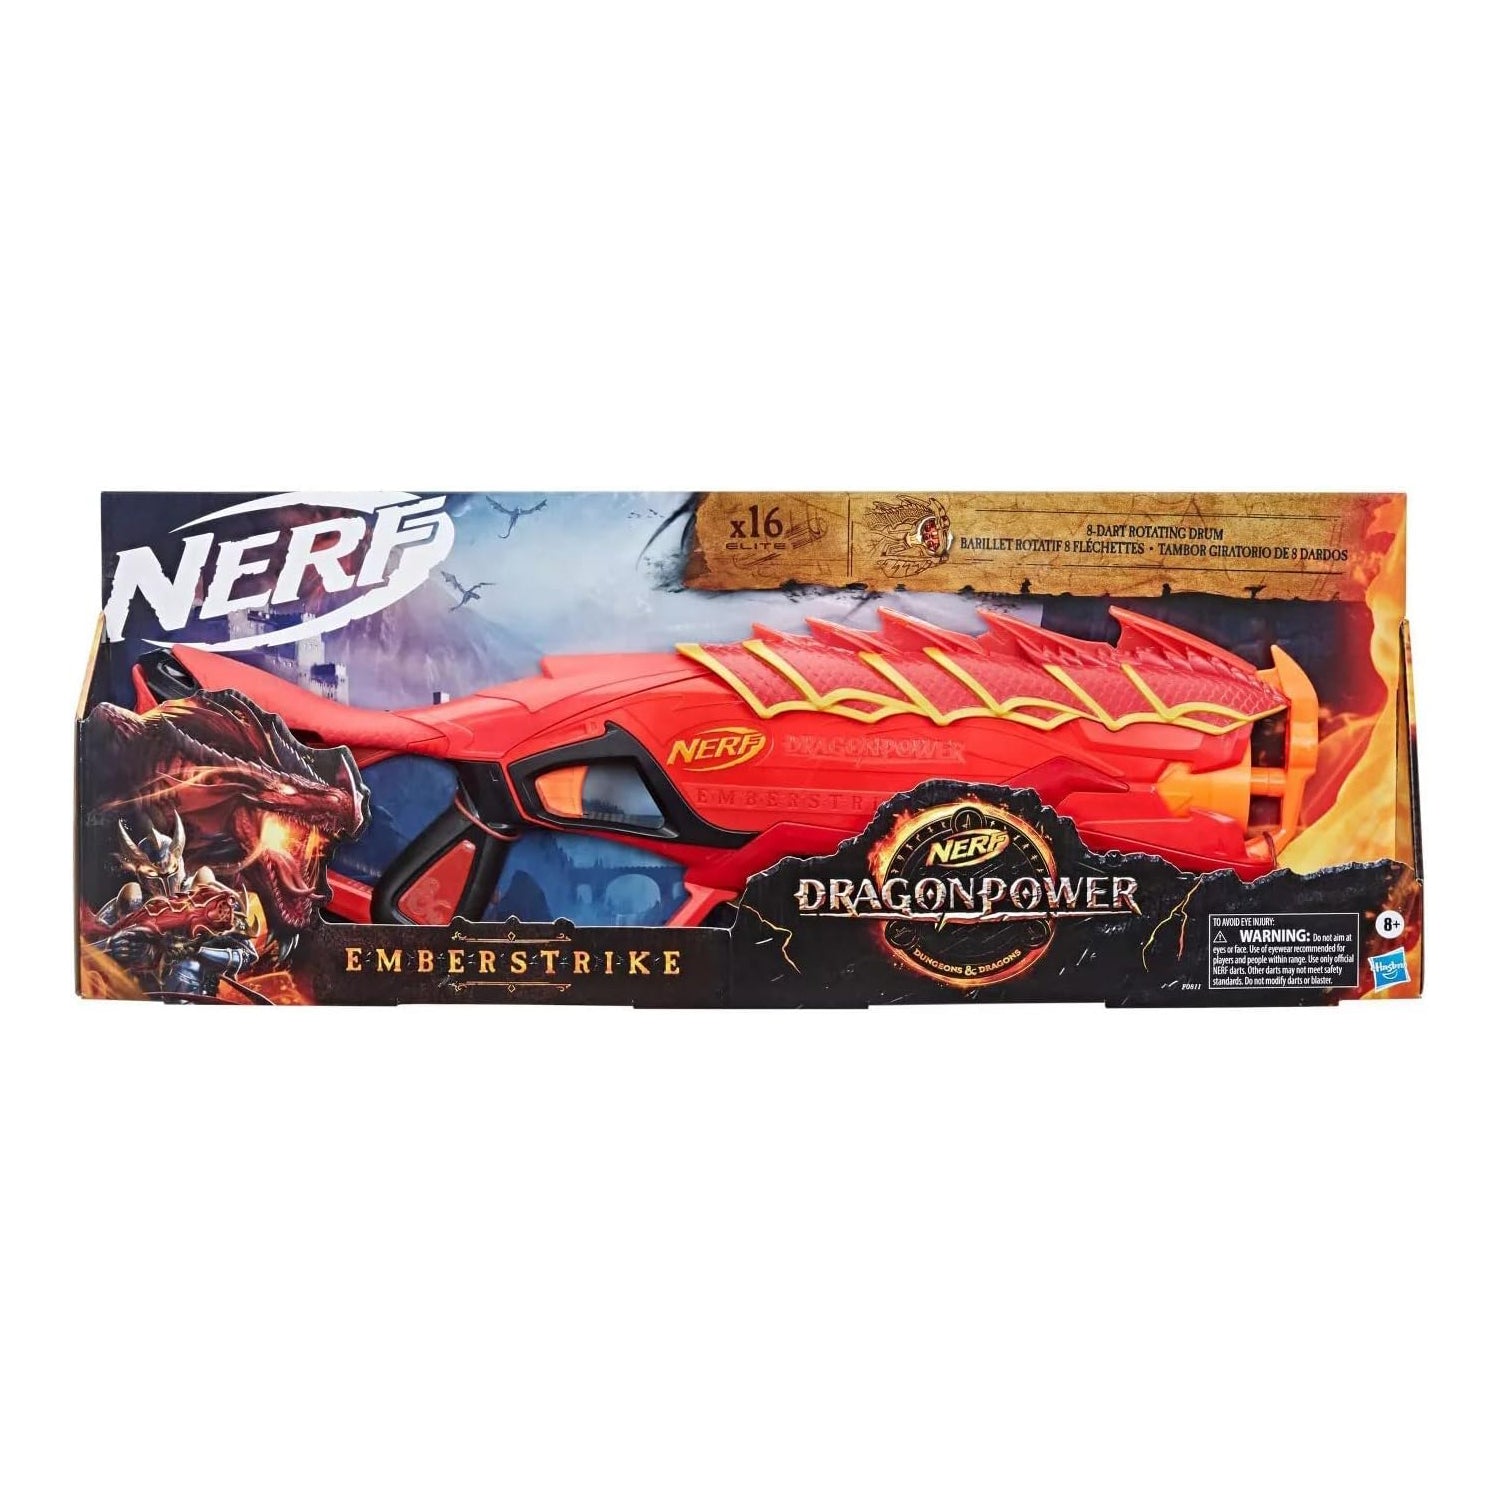 NERF Nerf DragonPower Emberstrike Blaster